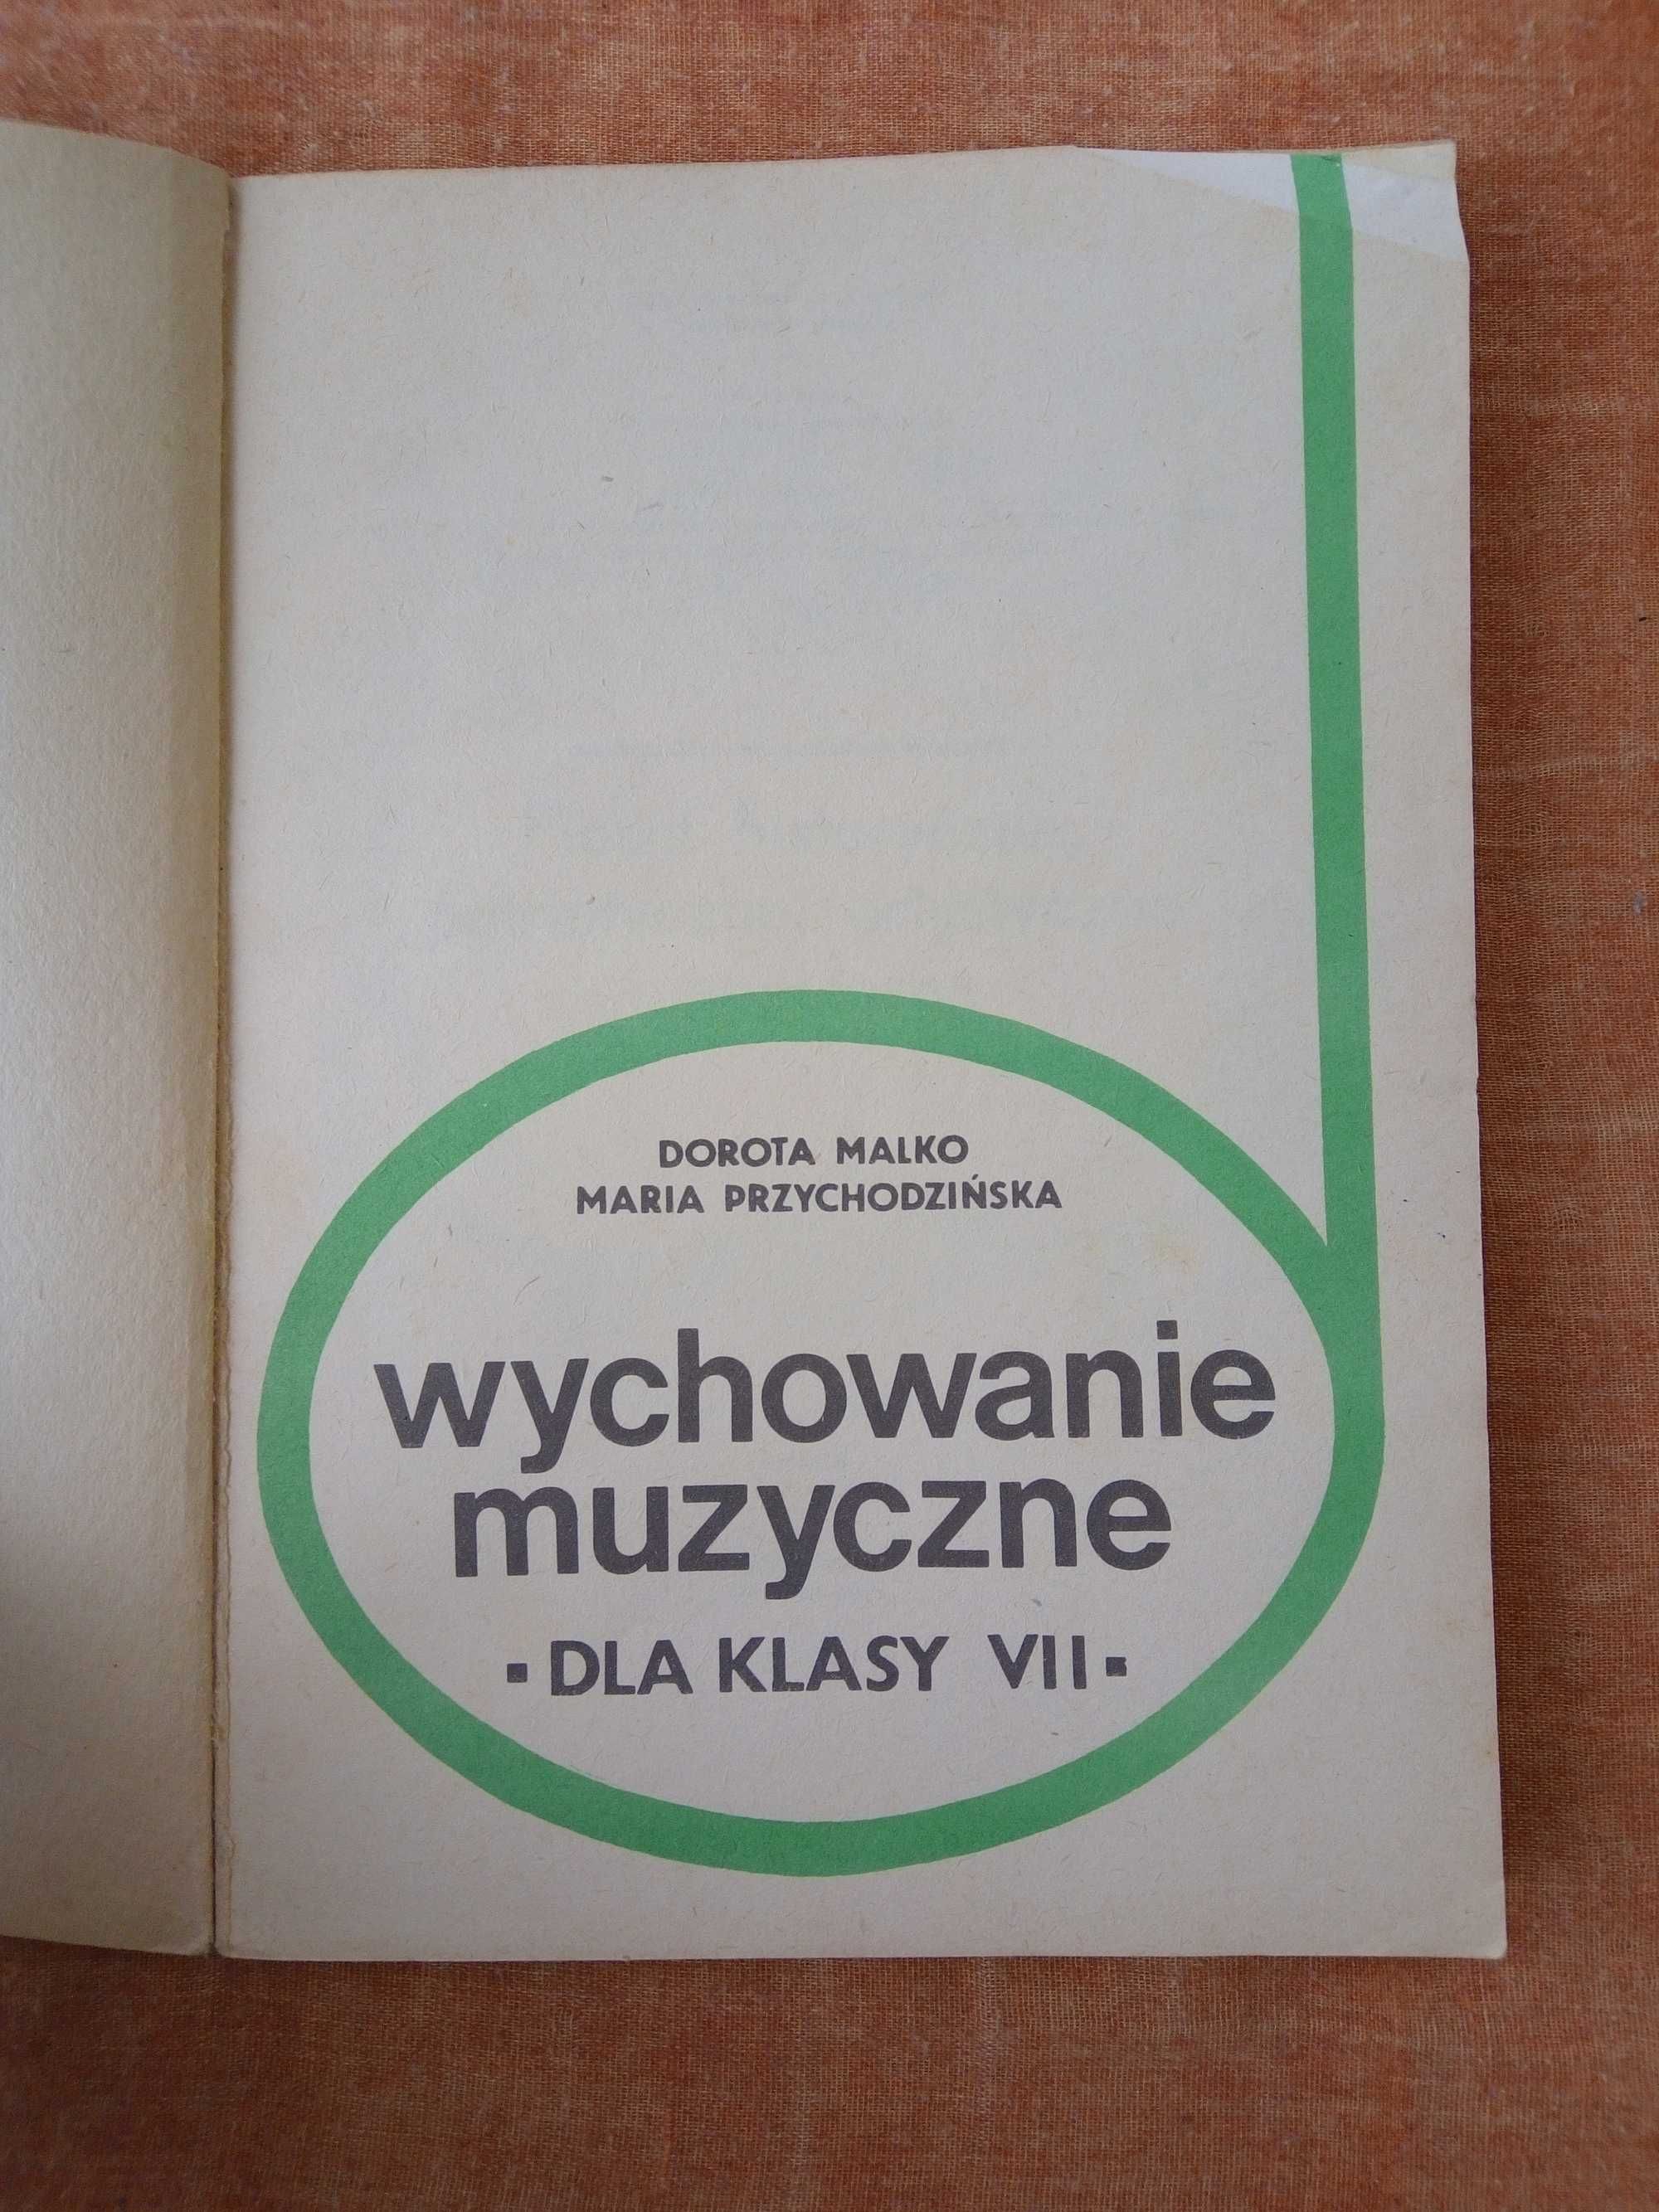 Wychowanie muzyczne 7 - Dorota Malko, Maria Przychodzińska (1977) WSiP